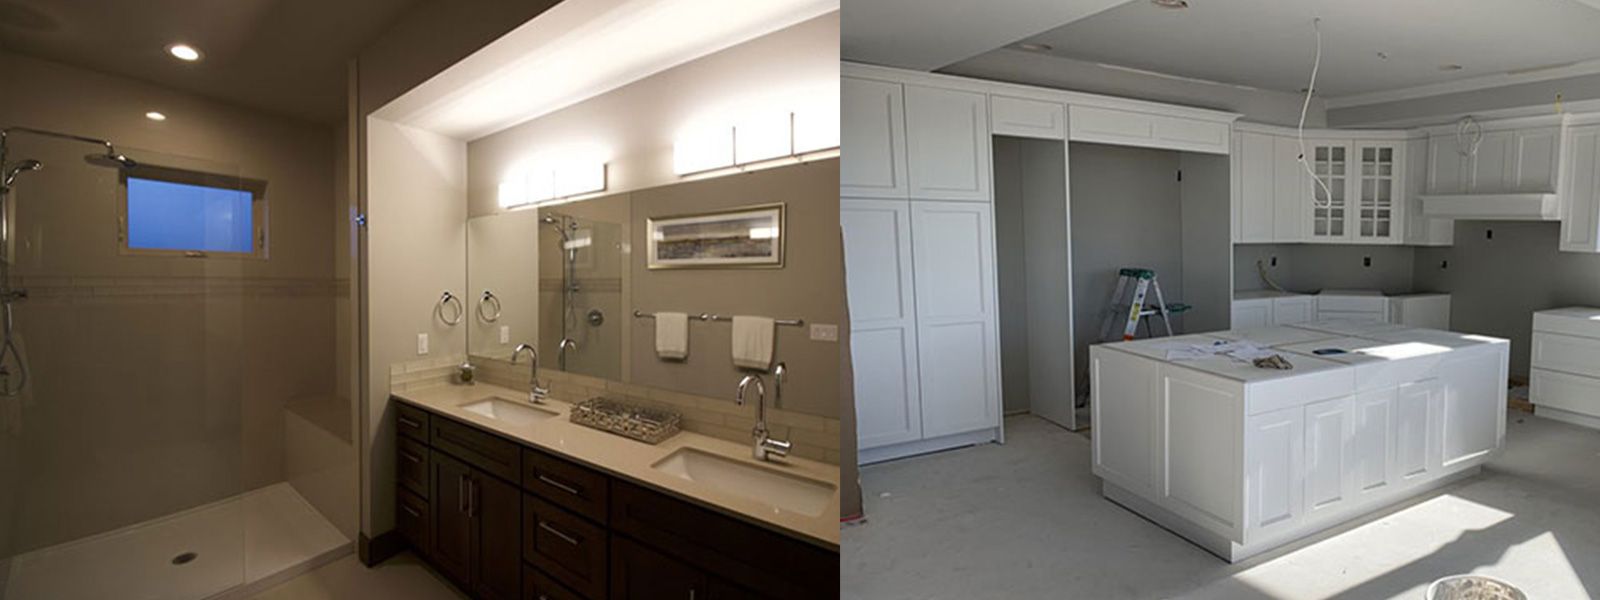 Bathroom & Kitchen Remodeling Service